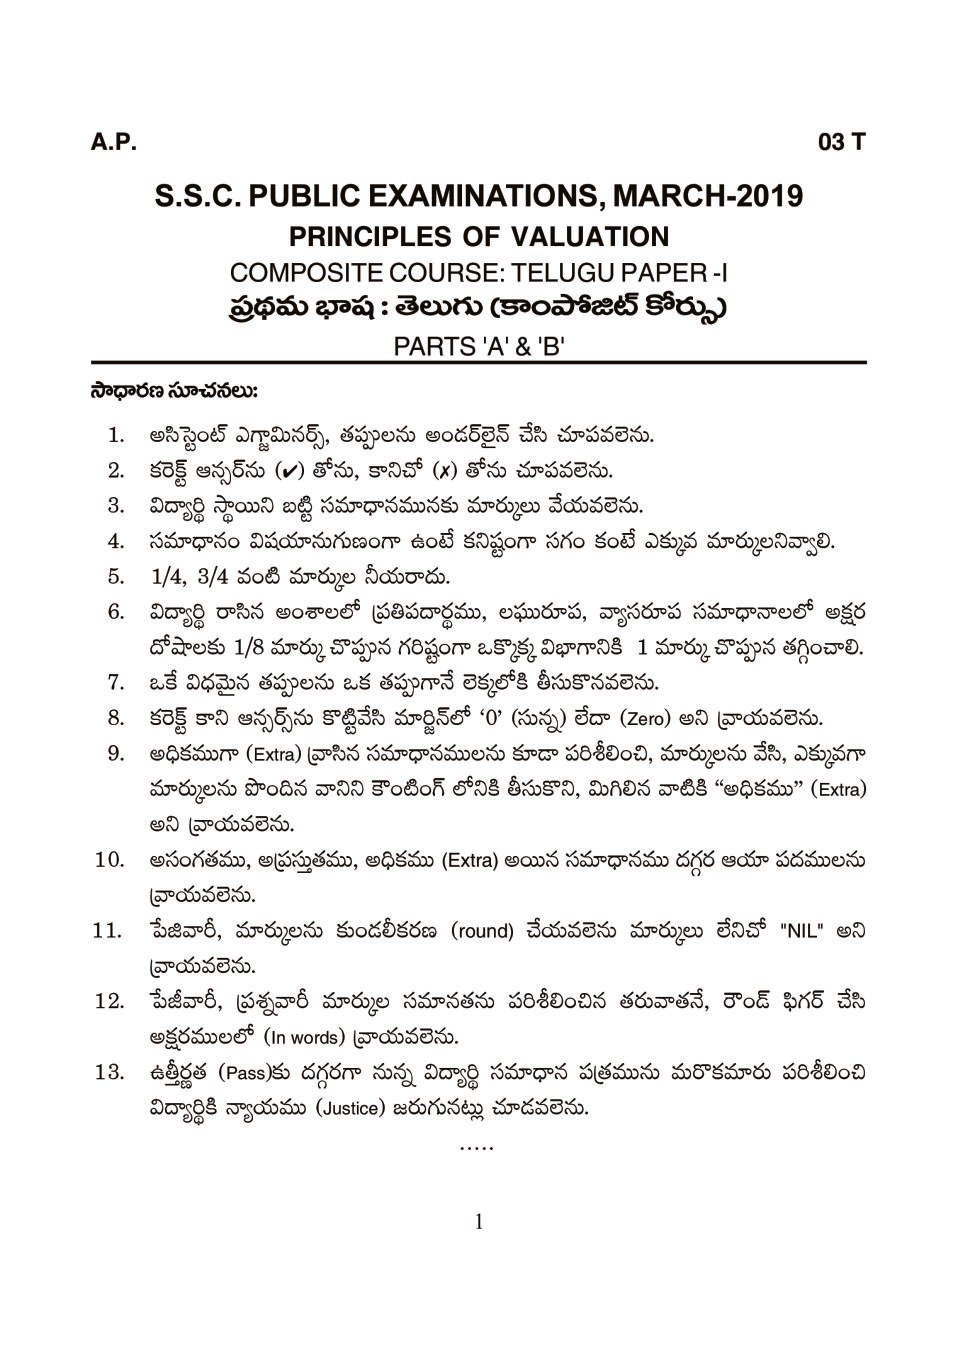 AP 10th Class Marking Scheme 2019 Telugu - Paper 1 (1st Language Composite) - Page 1